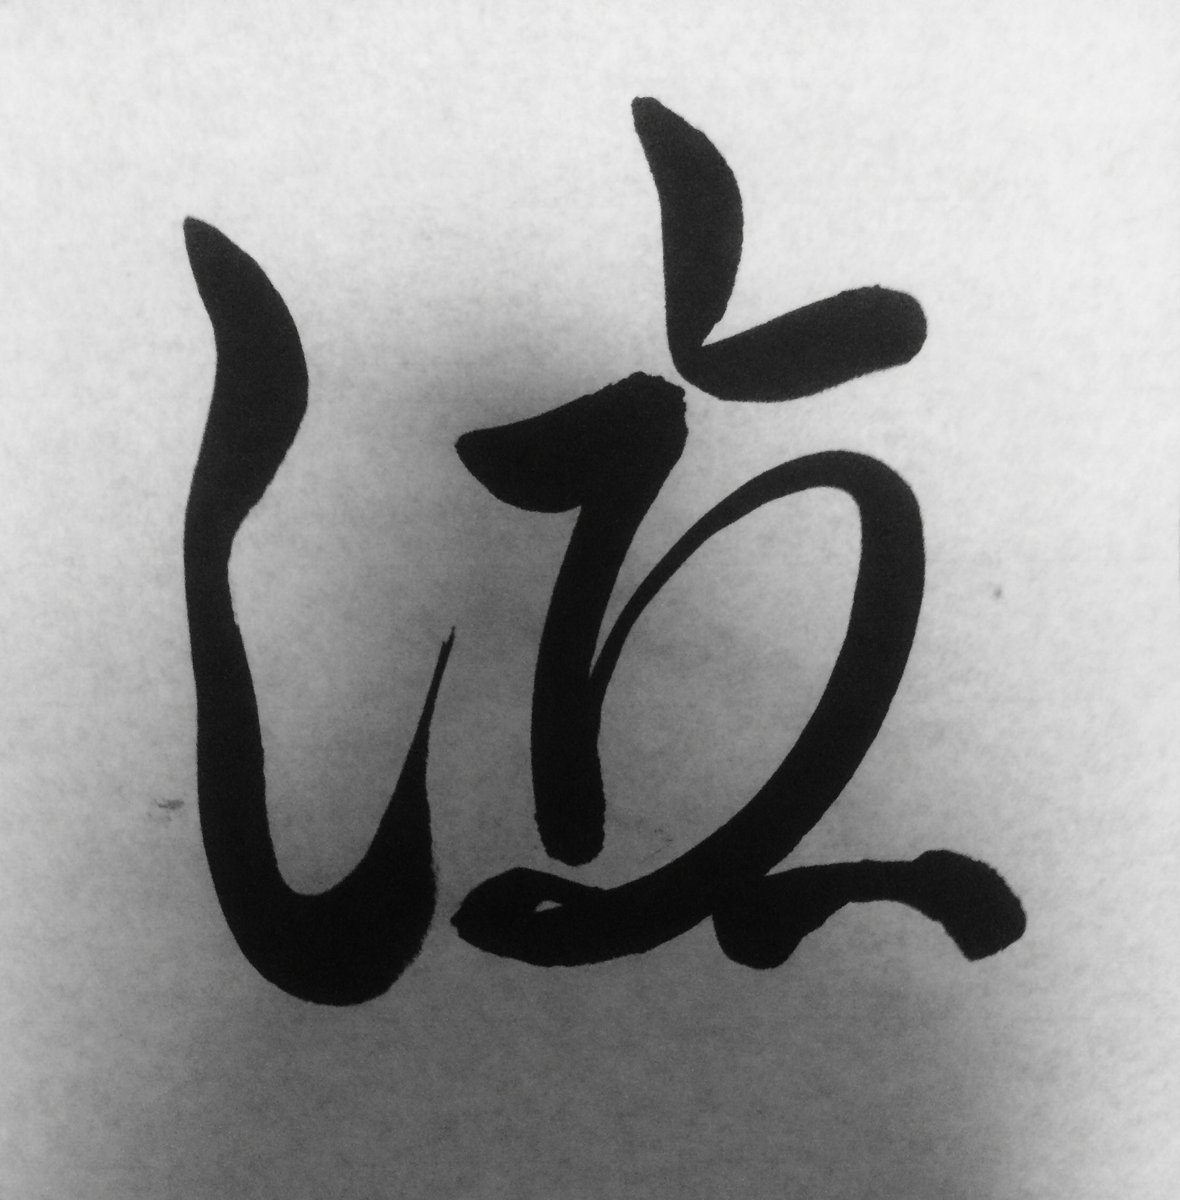 キ一 ひらがなで漢字を作る漢字アートを描きました 笑 ひらがなで漢字を作るのが楽しい 笑 くるしい で 泣 と 立 です 少しでも文字の形がわかった方はいいねしていただけると嬉しいです 笑 漢字アート 書道